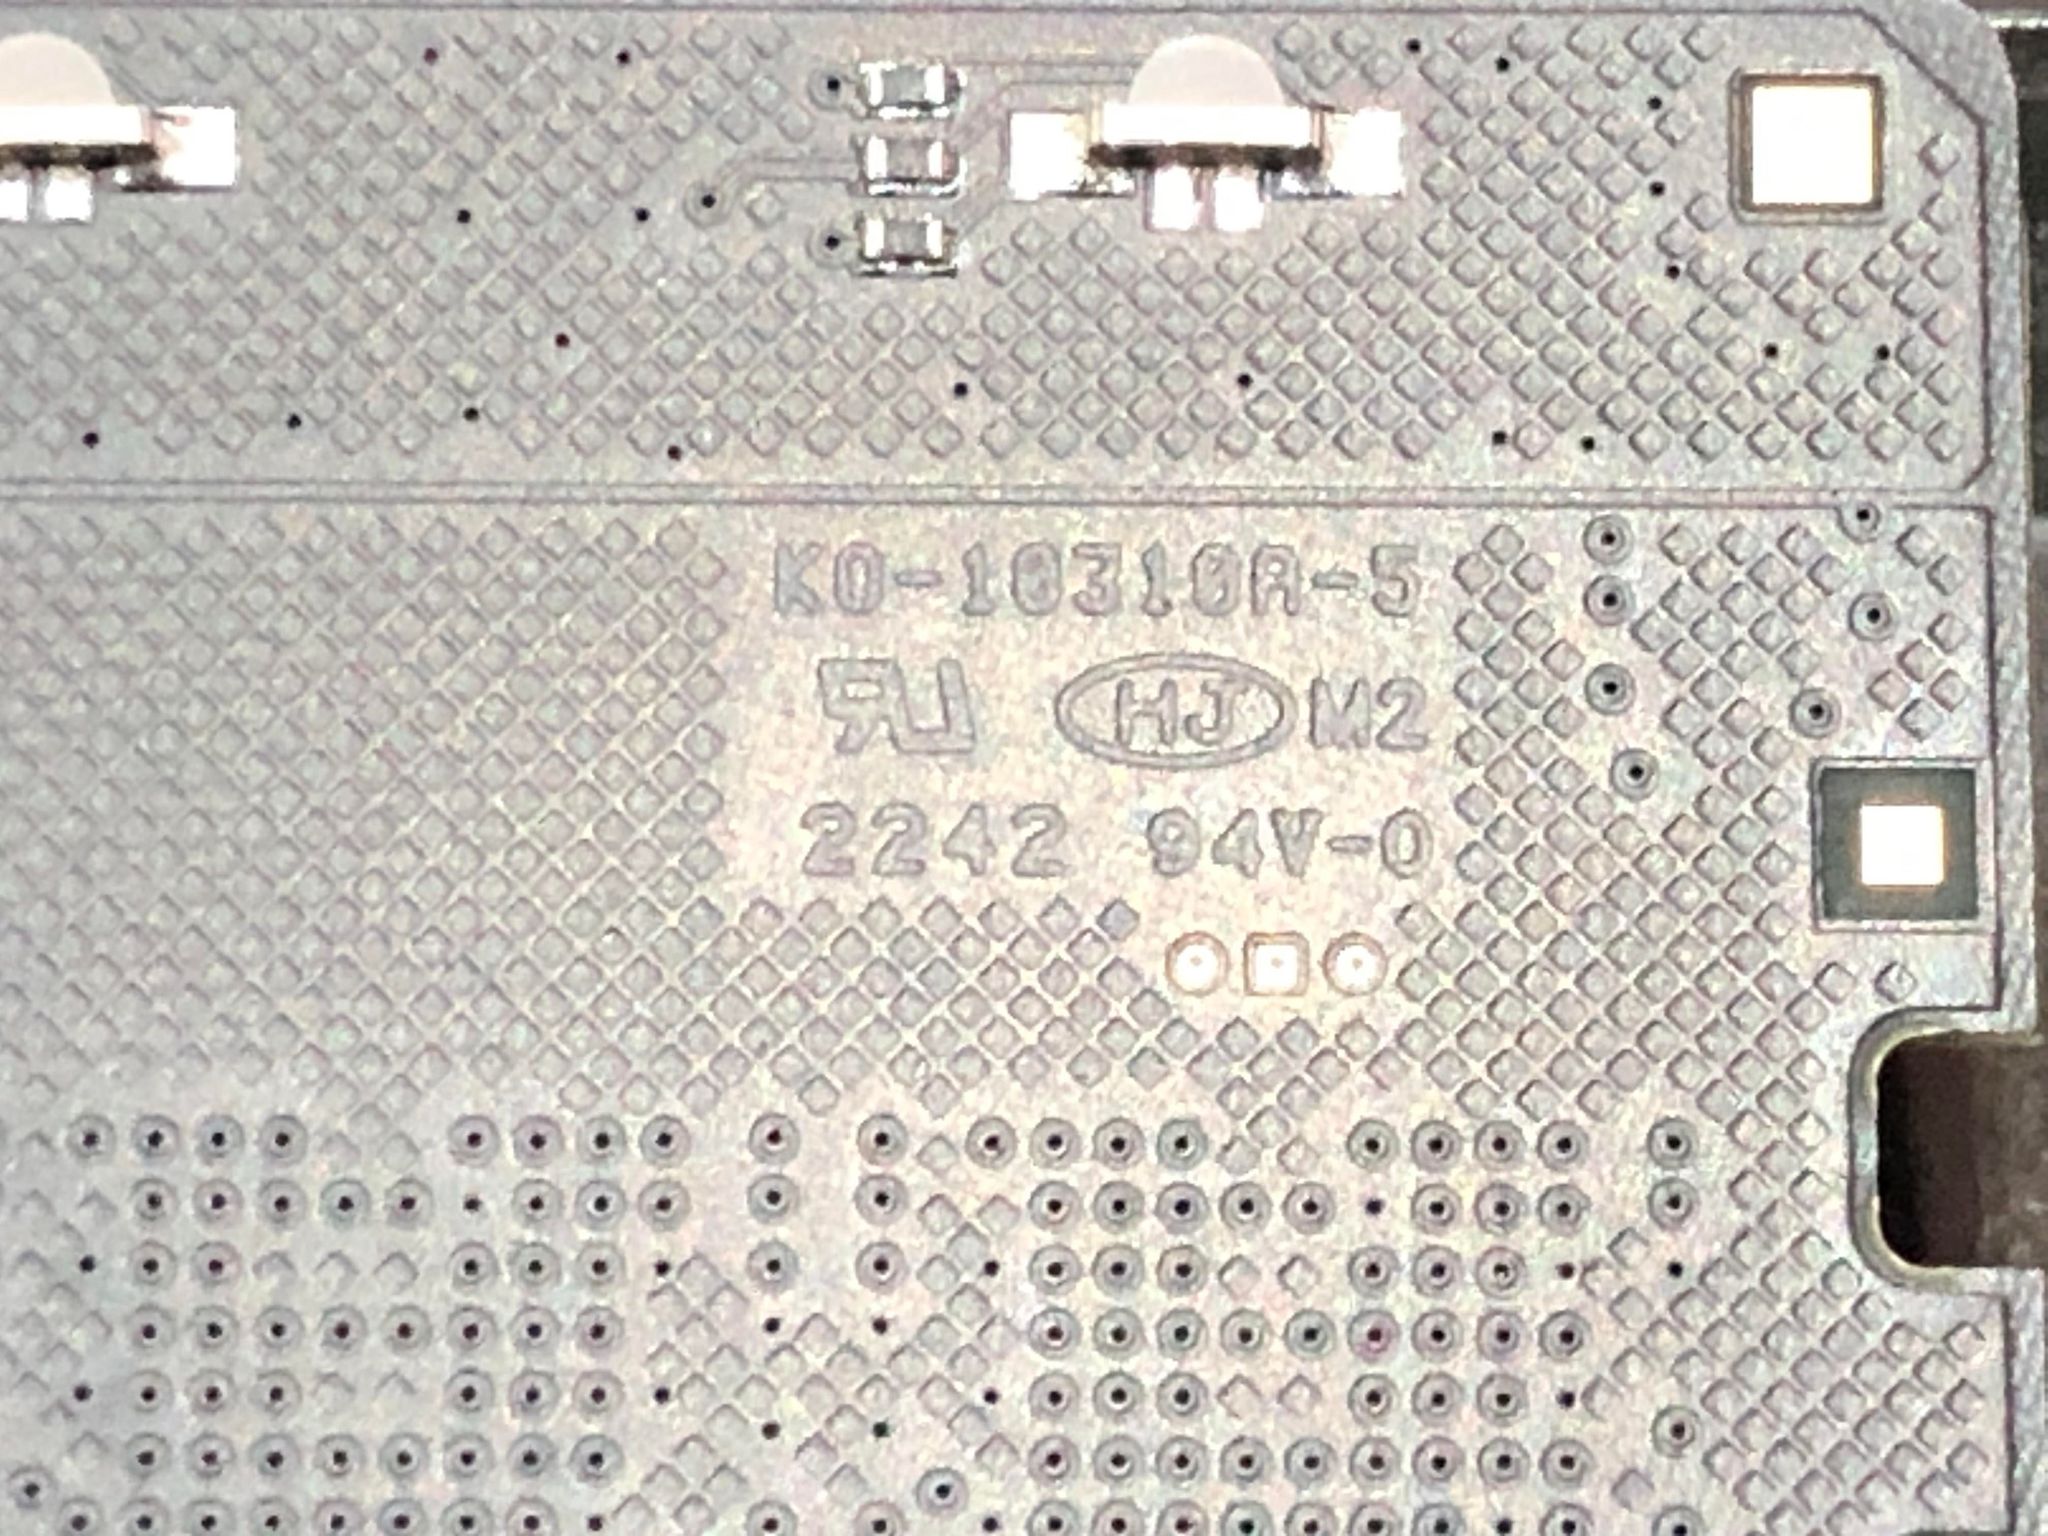 KO-10層PCB.jpg